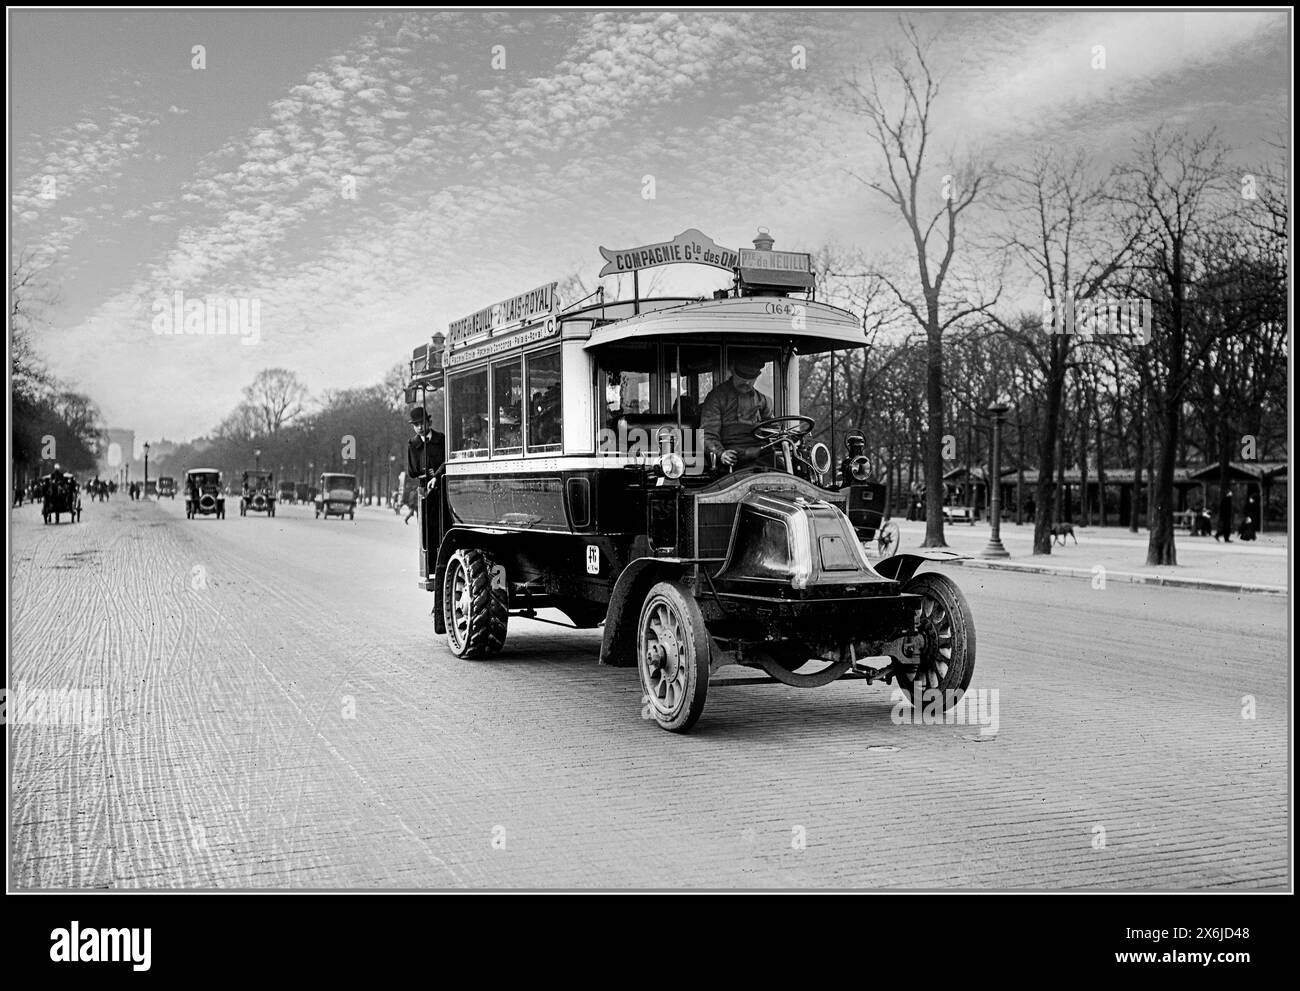 Autobus vintage Parigi 1910 RENAULT 164 compagnie générale des omnibus CGO con Arc de Triomphe sullo sfondo Parigi Francia. Trasporto pubblico anni '1900 a Parigi per Pte. De Neuilly- Palais Royal Foto Stock